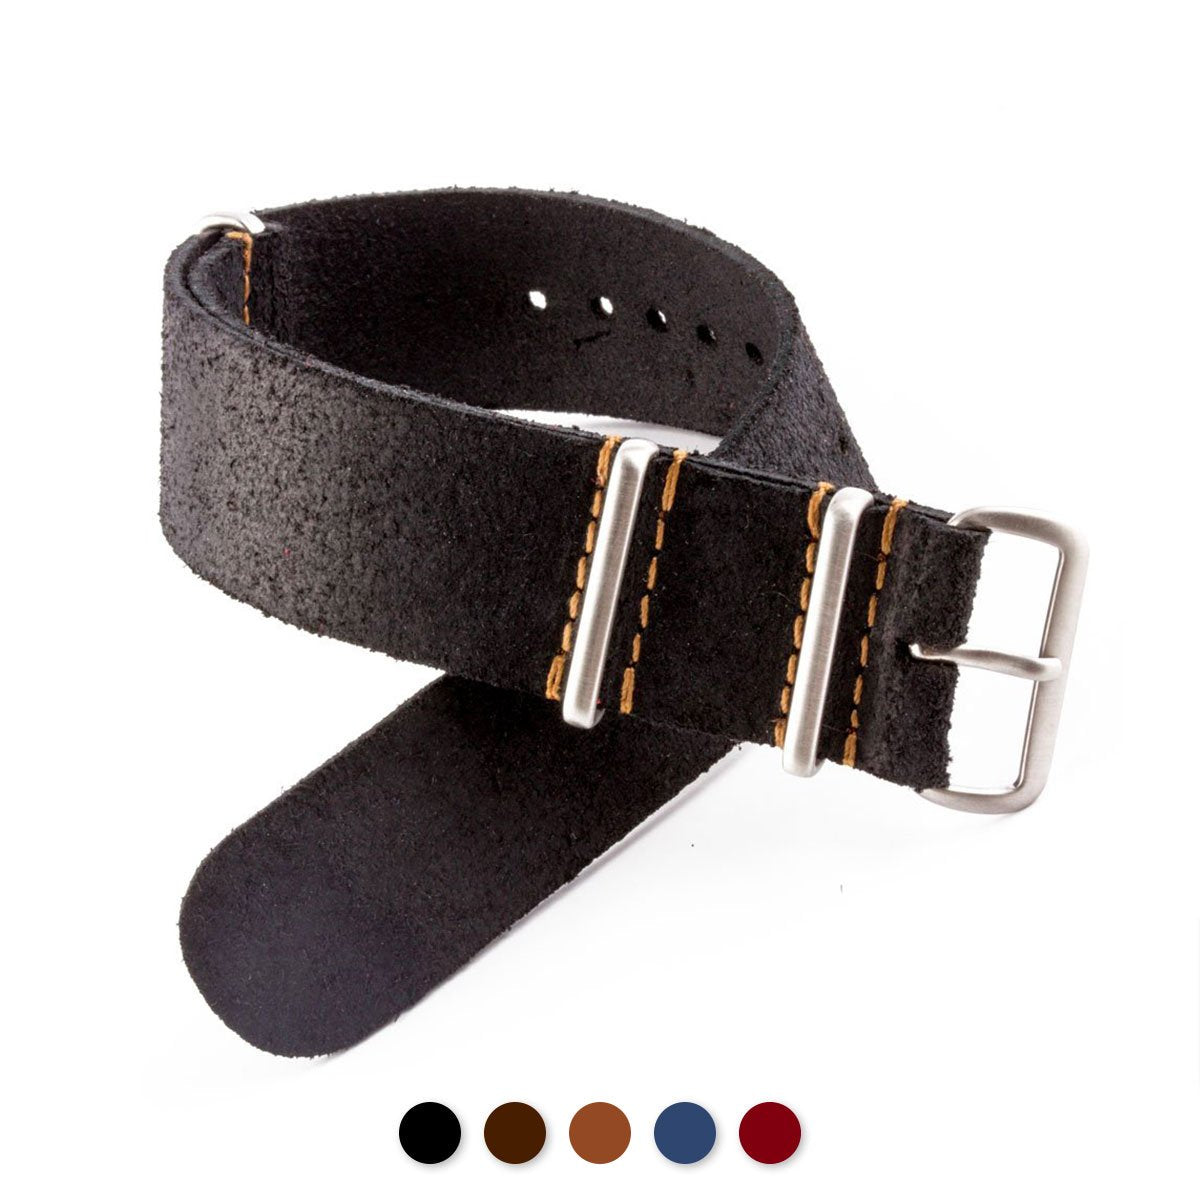 Tudor Black Bay Heritage - Nato cuir - Veau brossé (noir, marron, bleu, rouge) - watch band leather strap - ABP Concept -